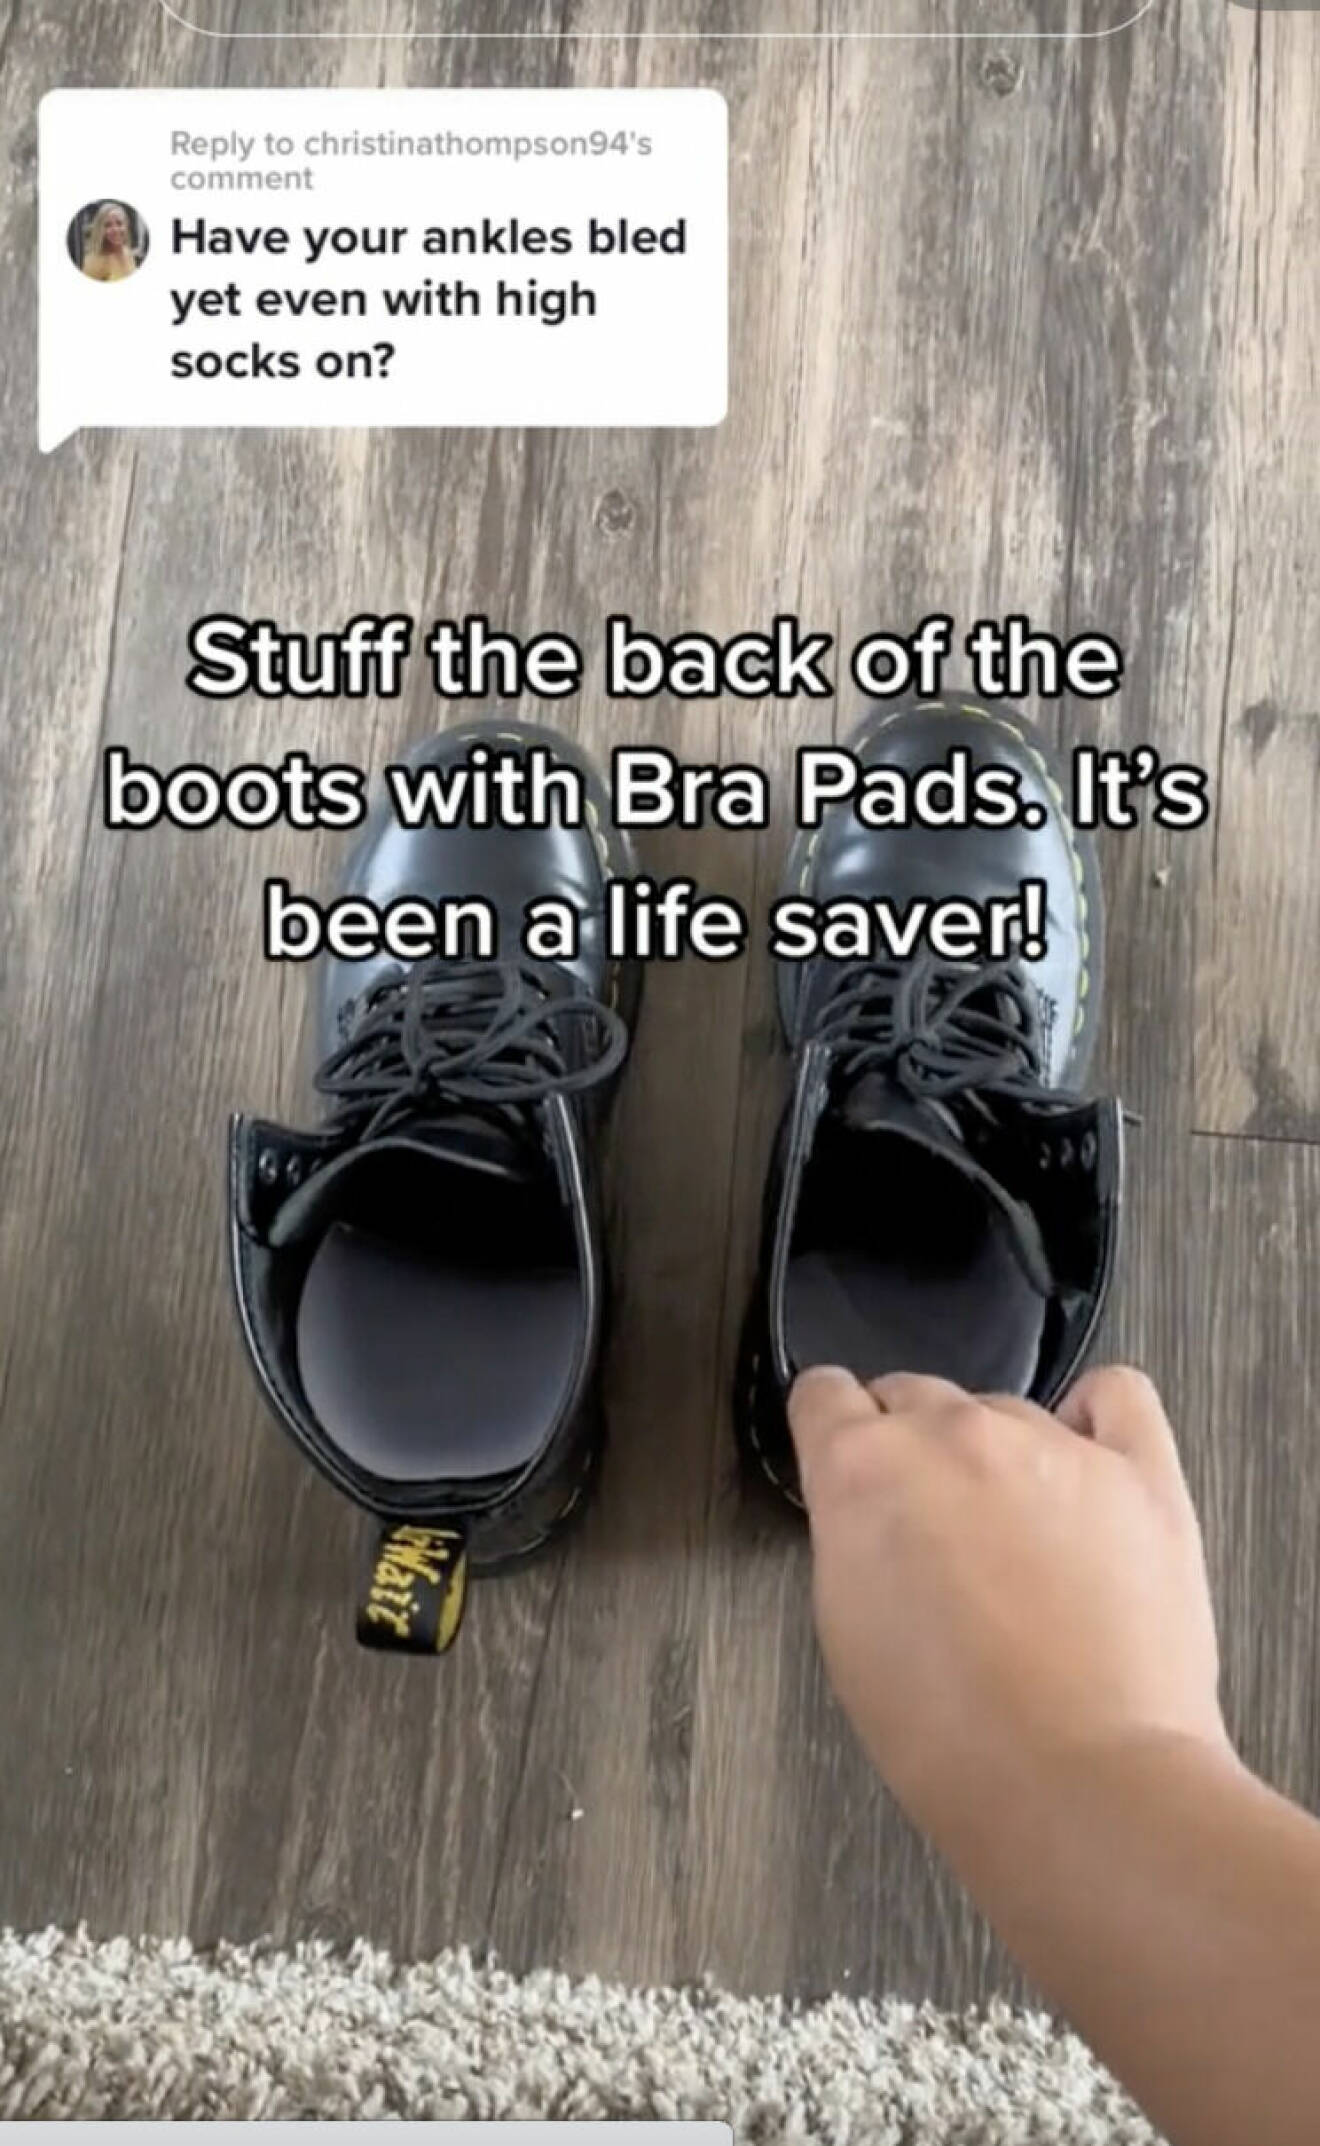 Sätt behå-inlägg i skorna för att slippa skavsår.